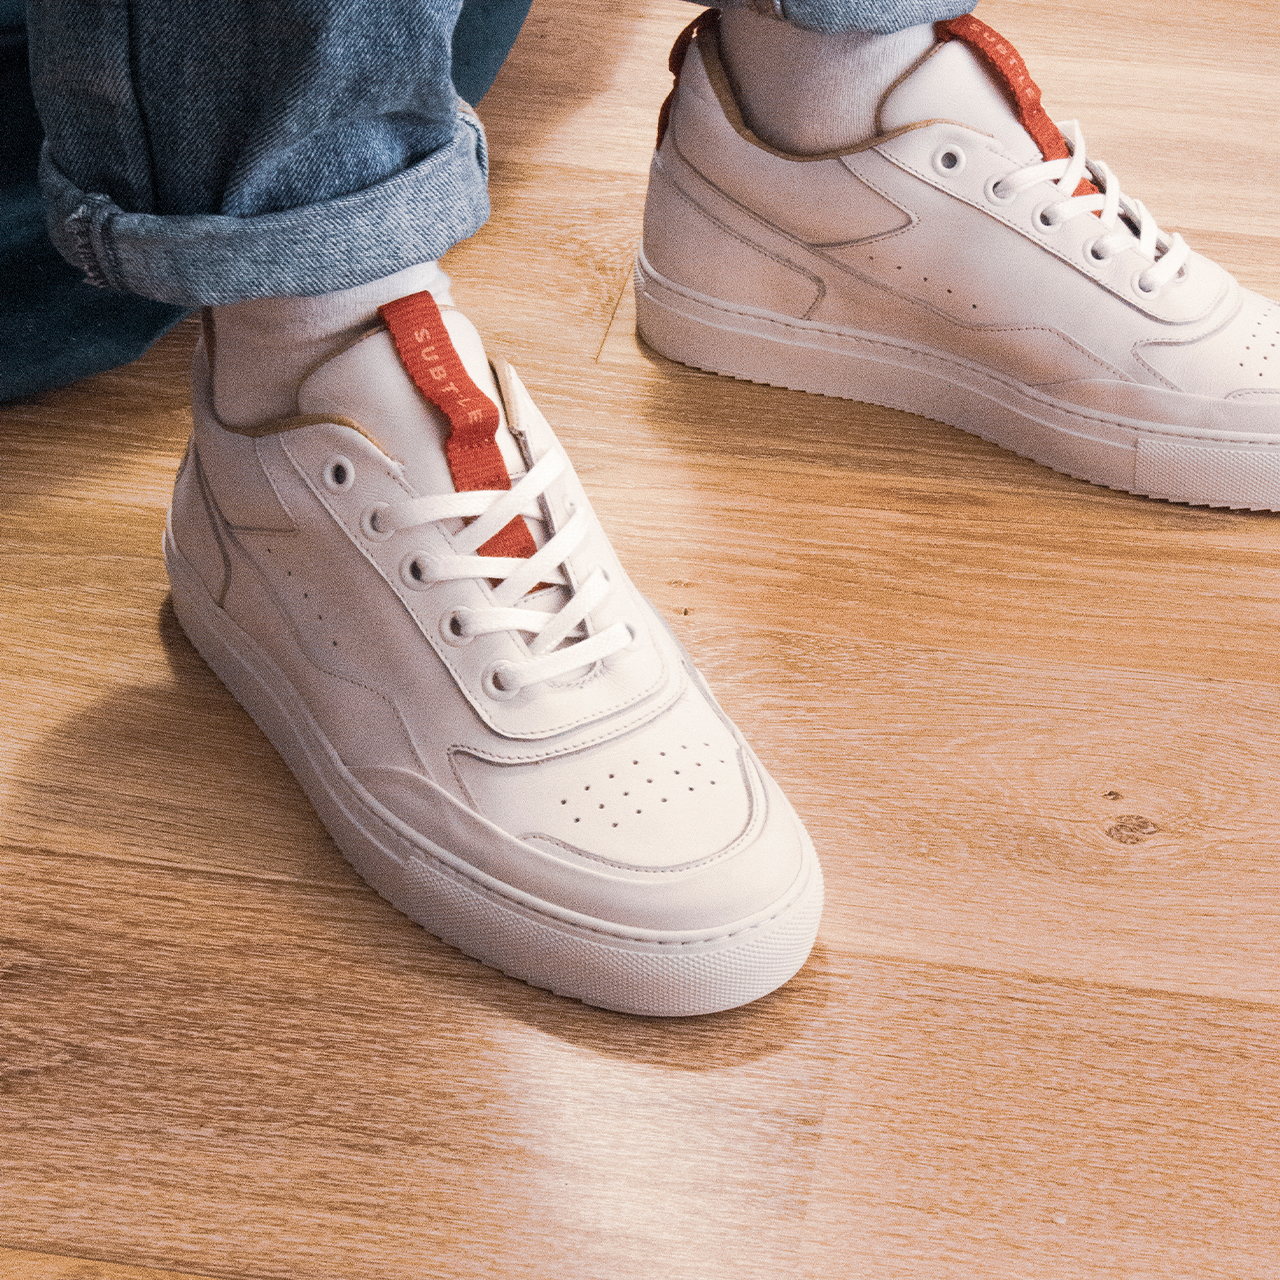 Sublte Shoes présente ses nouvelles baskets blanche en cuir, les Sigma